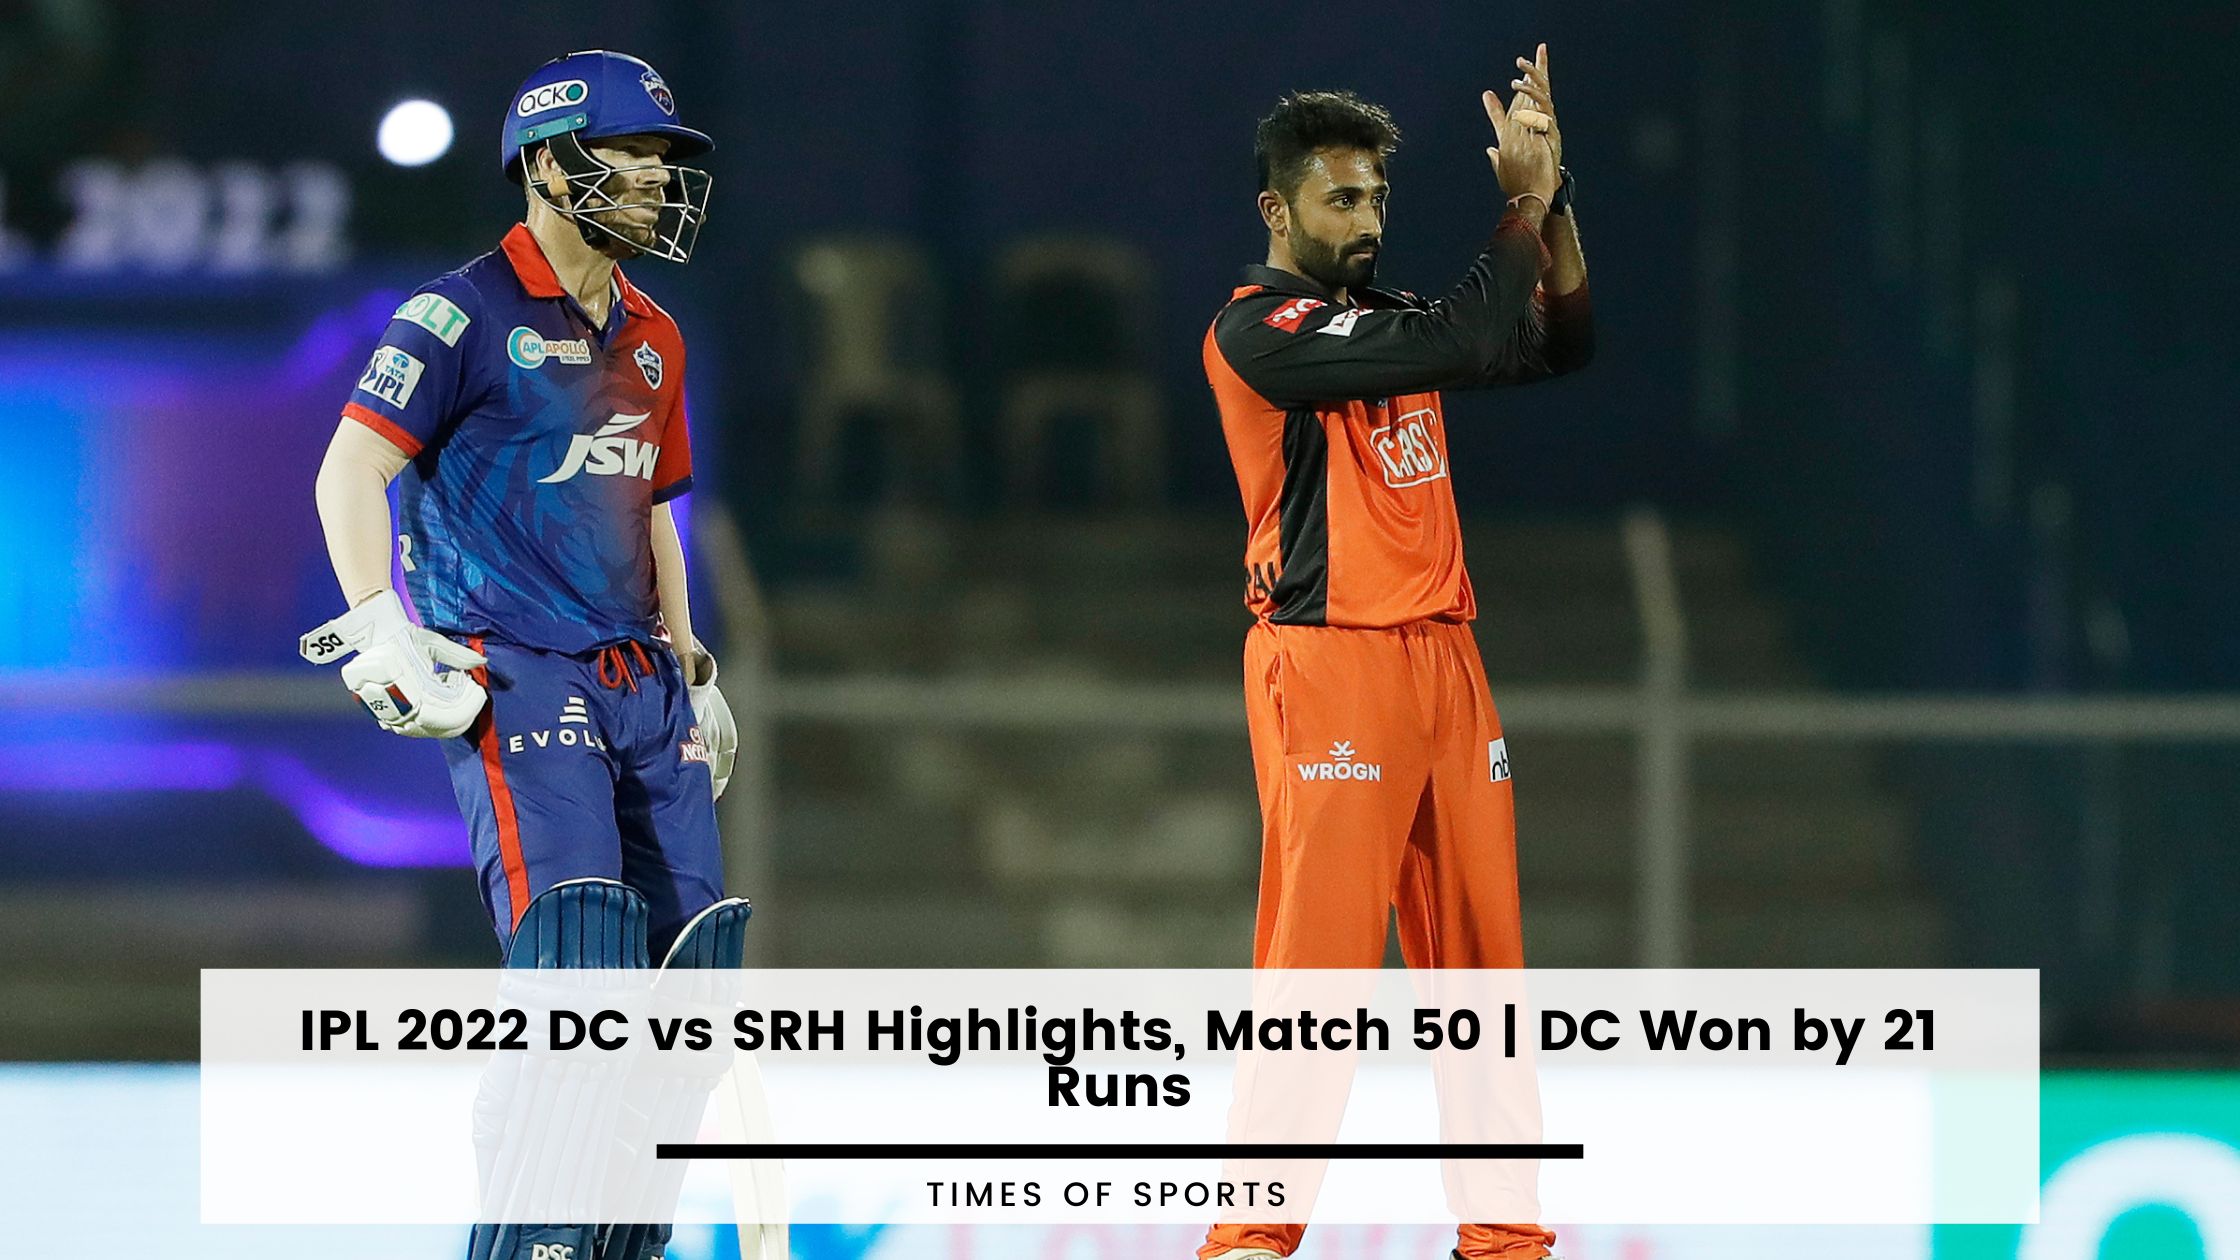 IPL 2022 DC vs SRH Highlights, Match 50 DC Won by 21 Runs